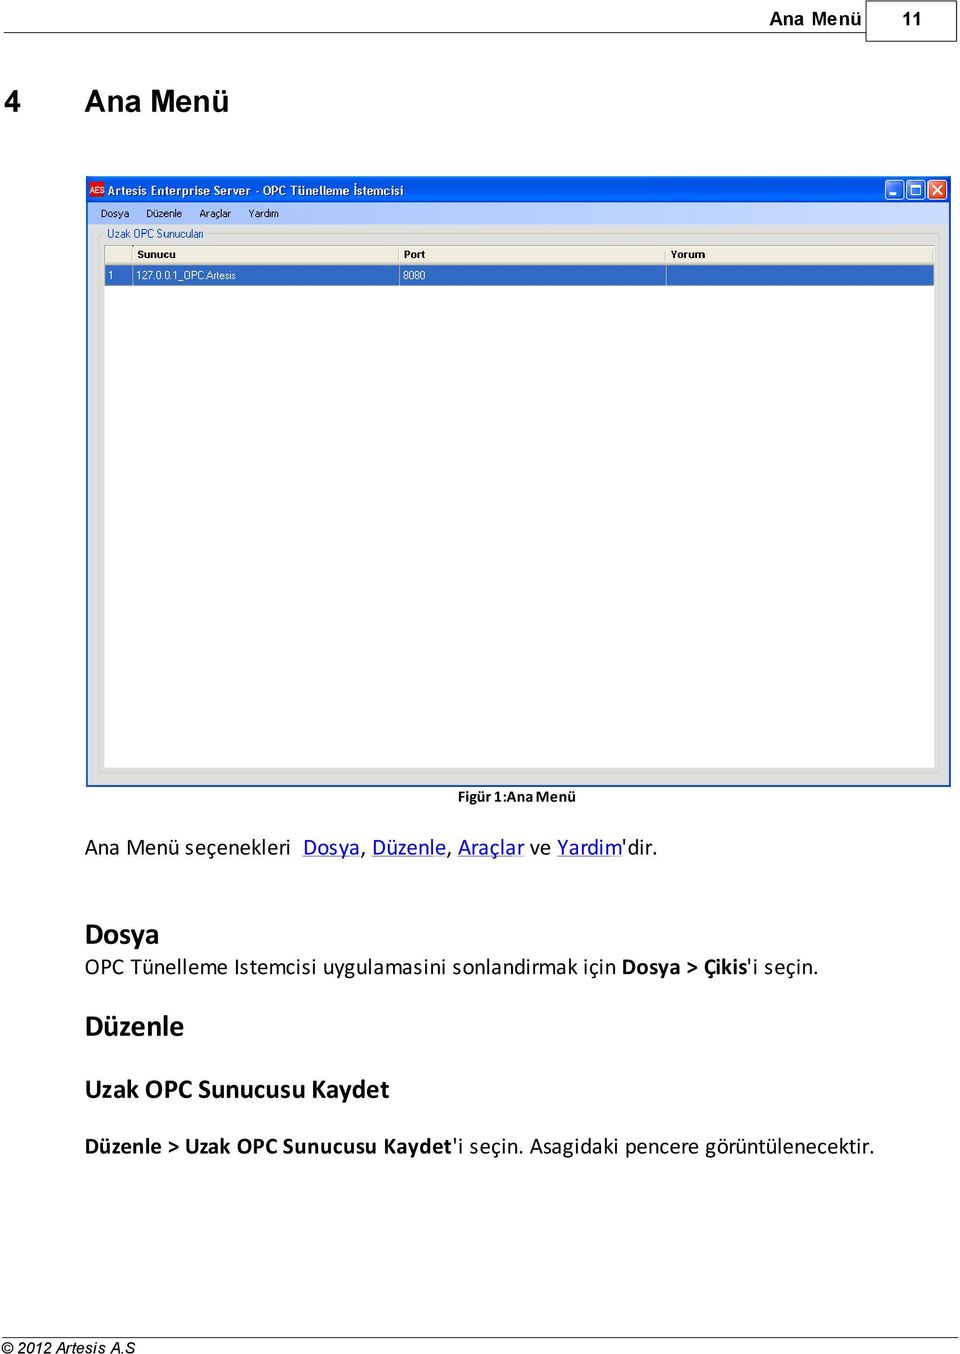 Dosya OPC Tünelleme Istemcisi uygulamasini sonlandirmak için Dosya >